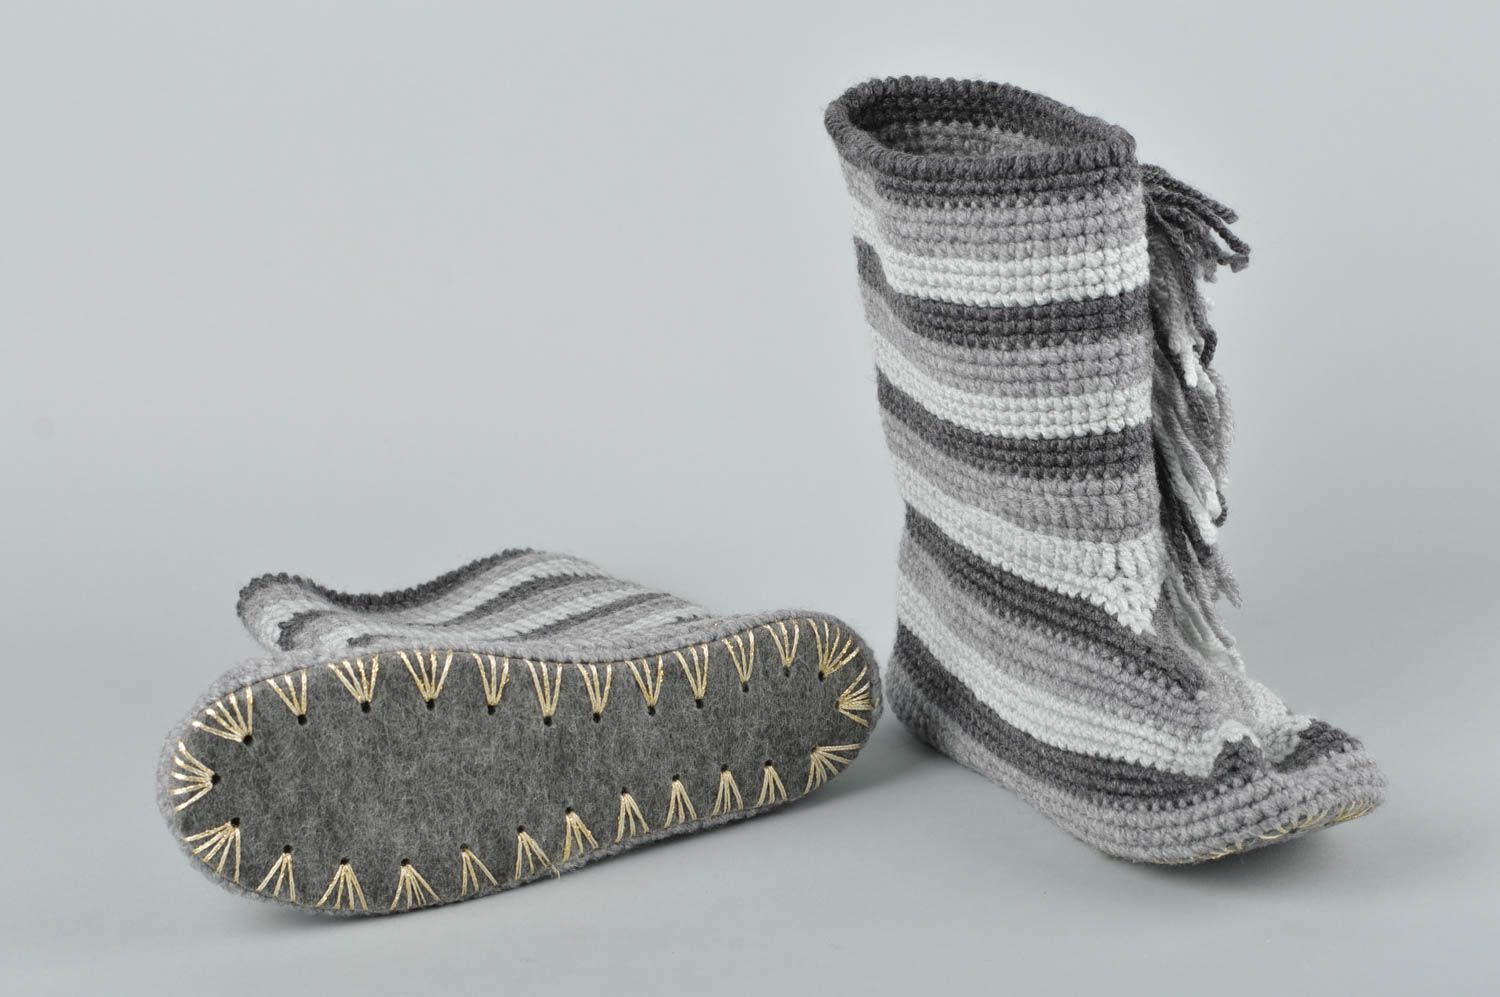 Handmade slippers crochet slippers for men gift ideas for guys house shoes photo 2